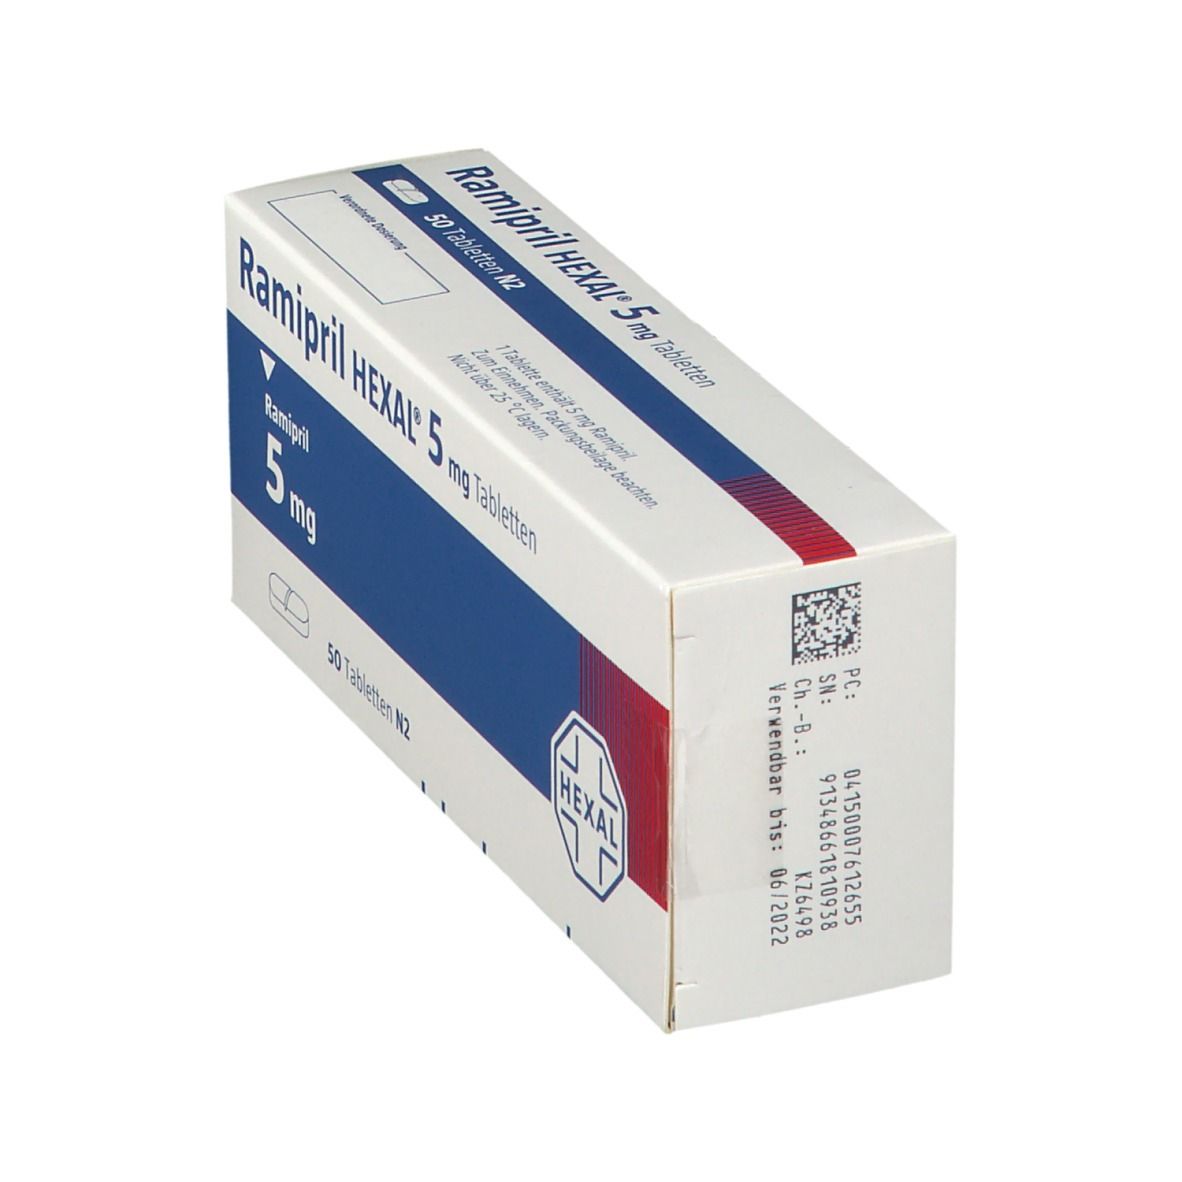 Ramipril HEXAL® 5 mg